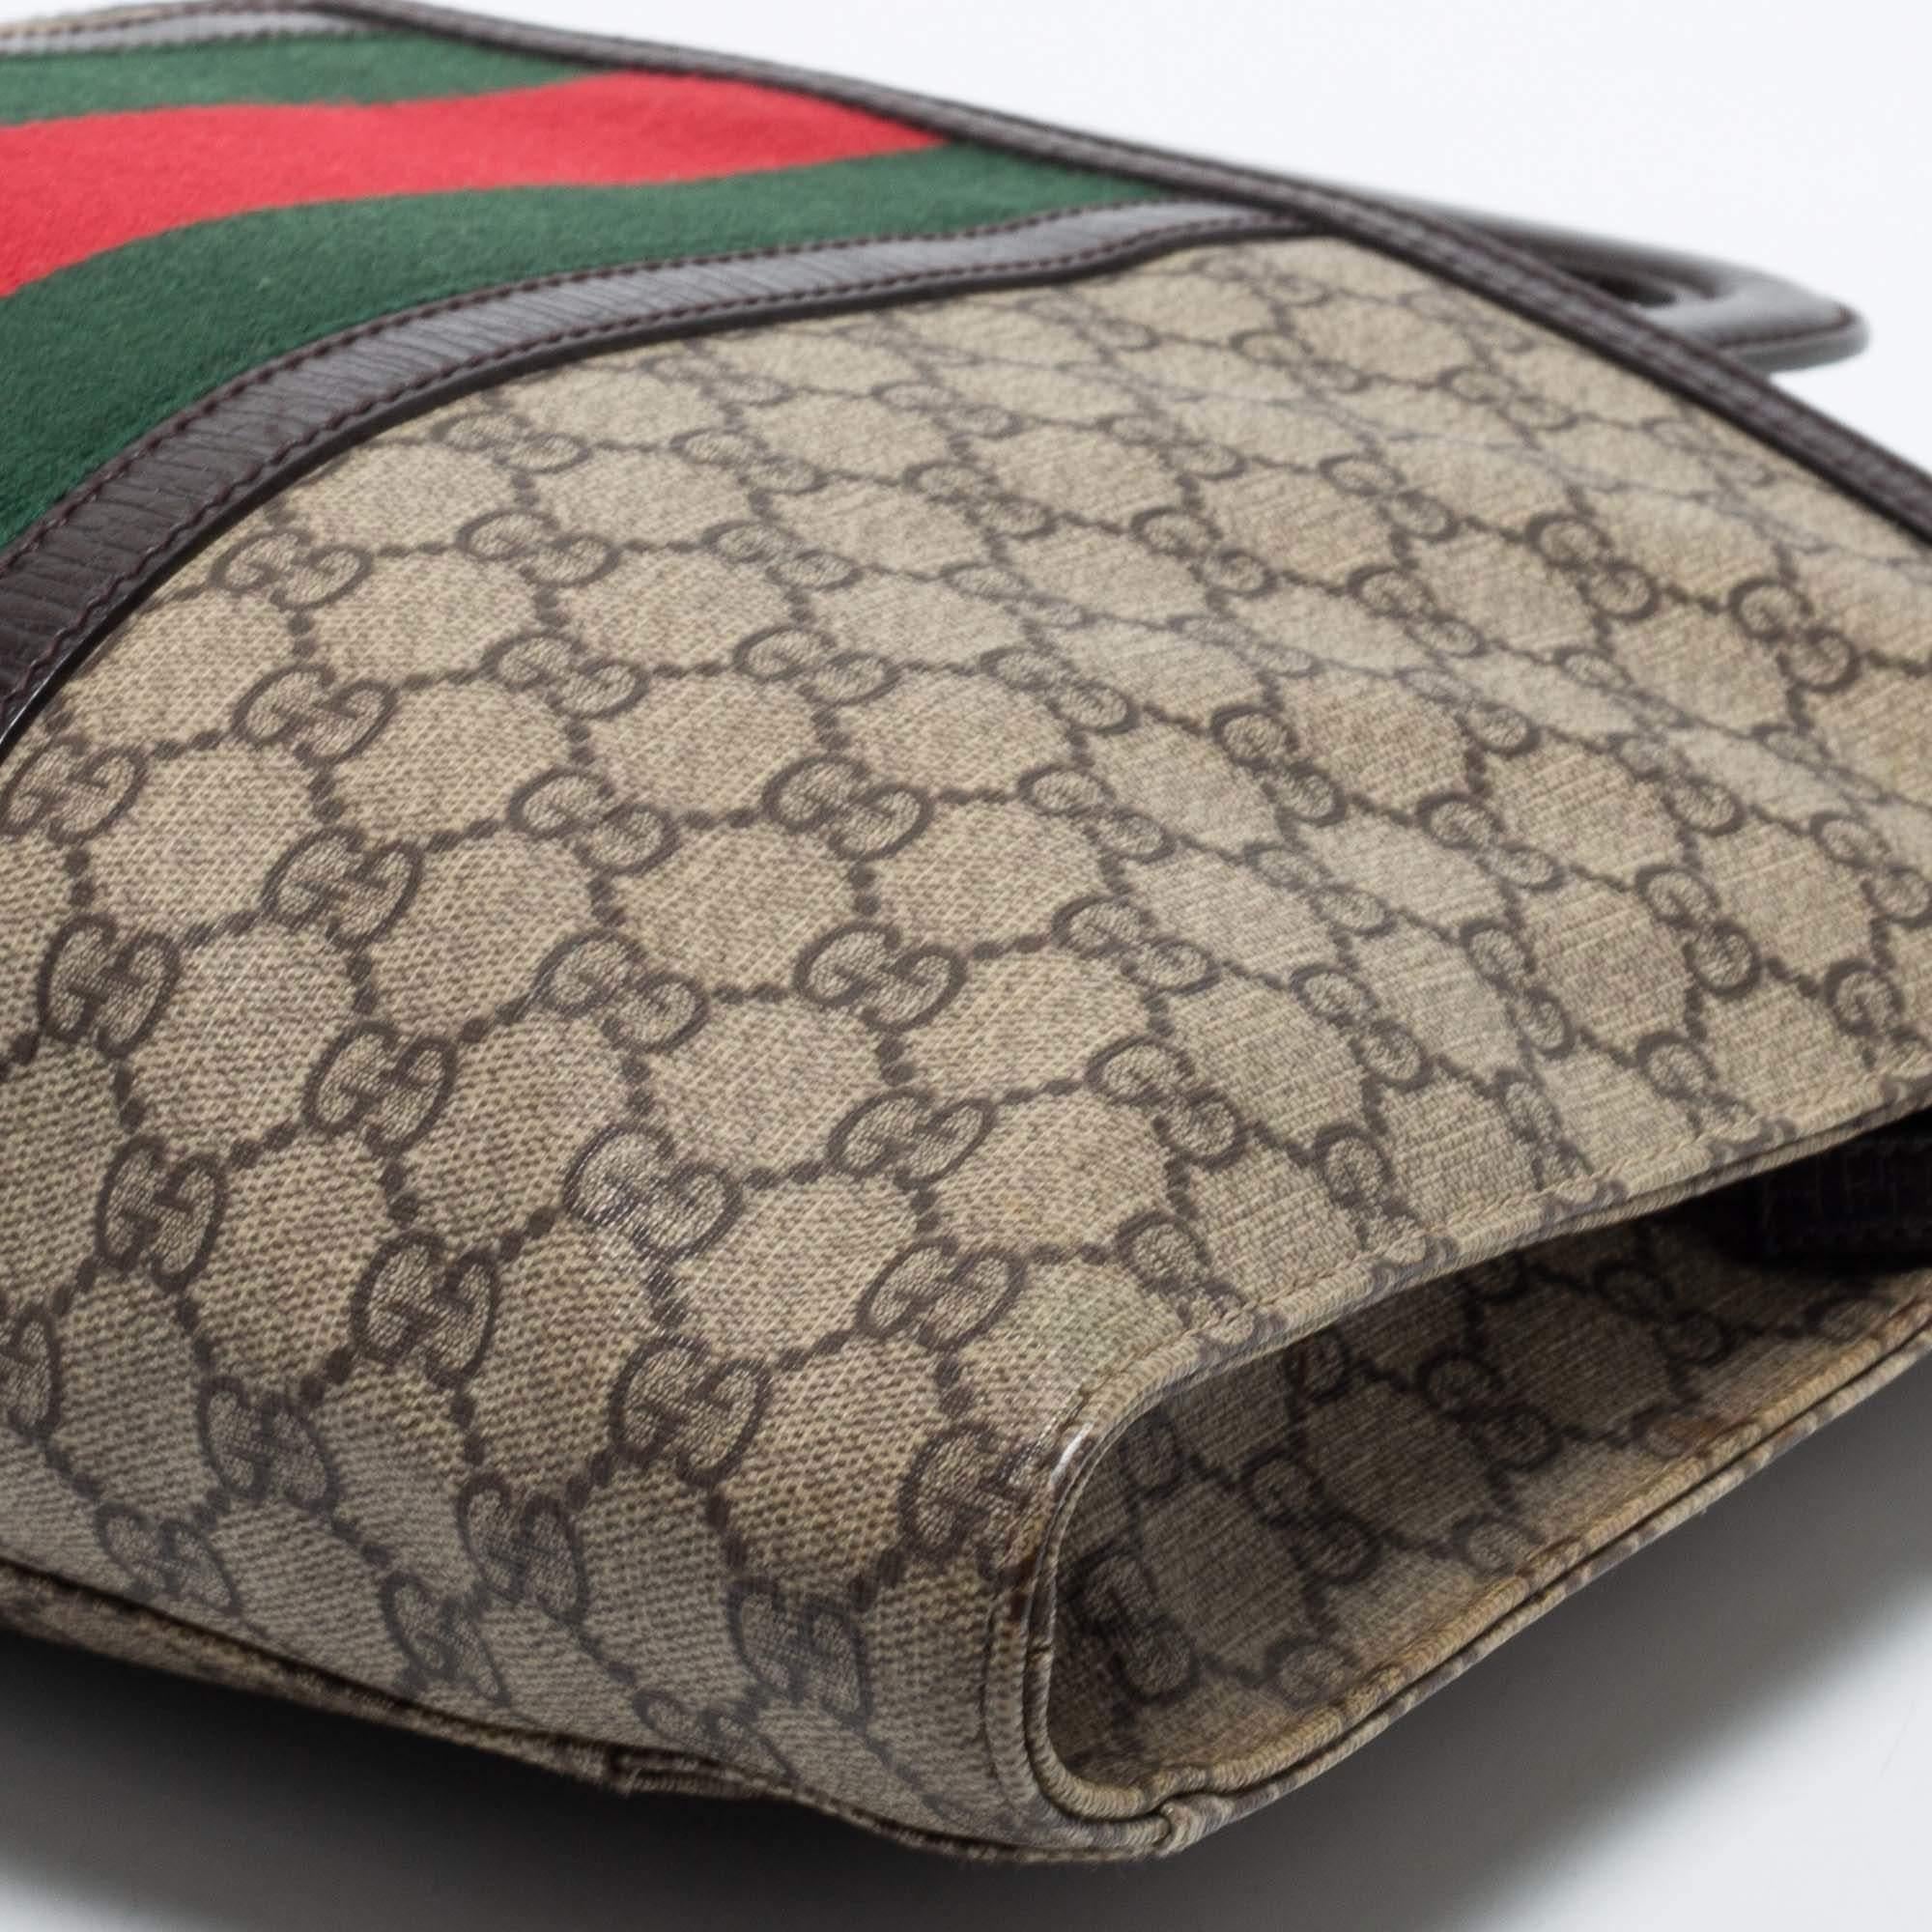 Gucci - Sac porte-documents « Supremes » en toile et cuir marron/beige avec logo GG 8